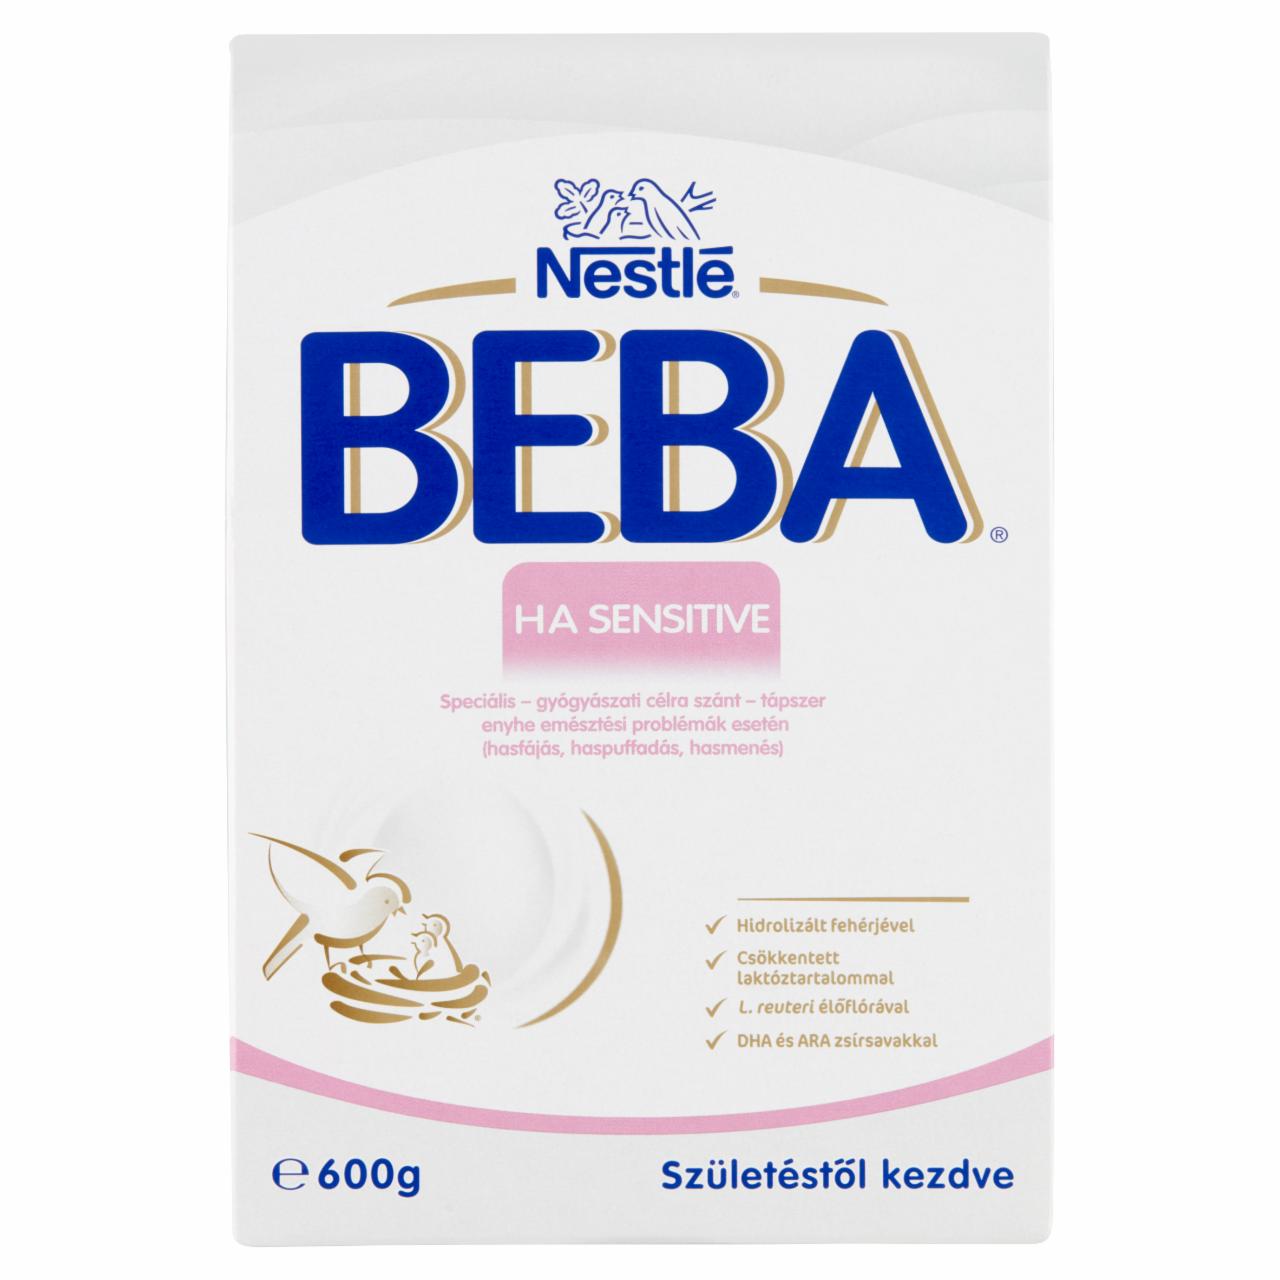 Képek - Beba HA Sensitive speciális - gyógyászati célra szánt - tápszer születéstől kezdve 600 g